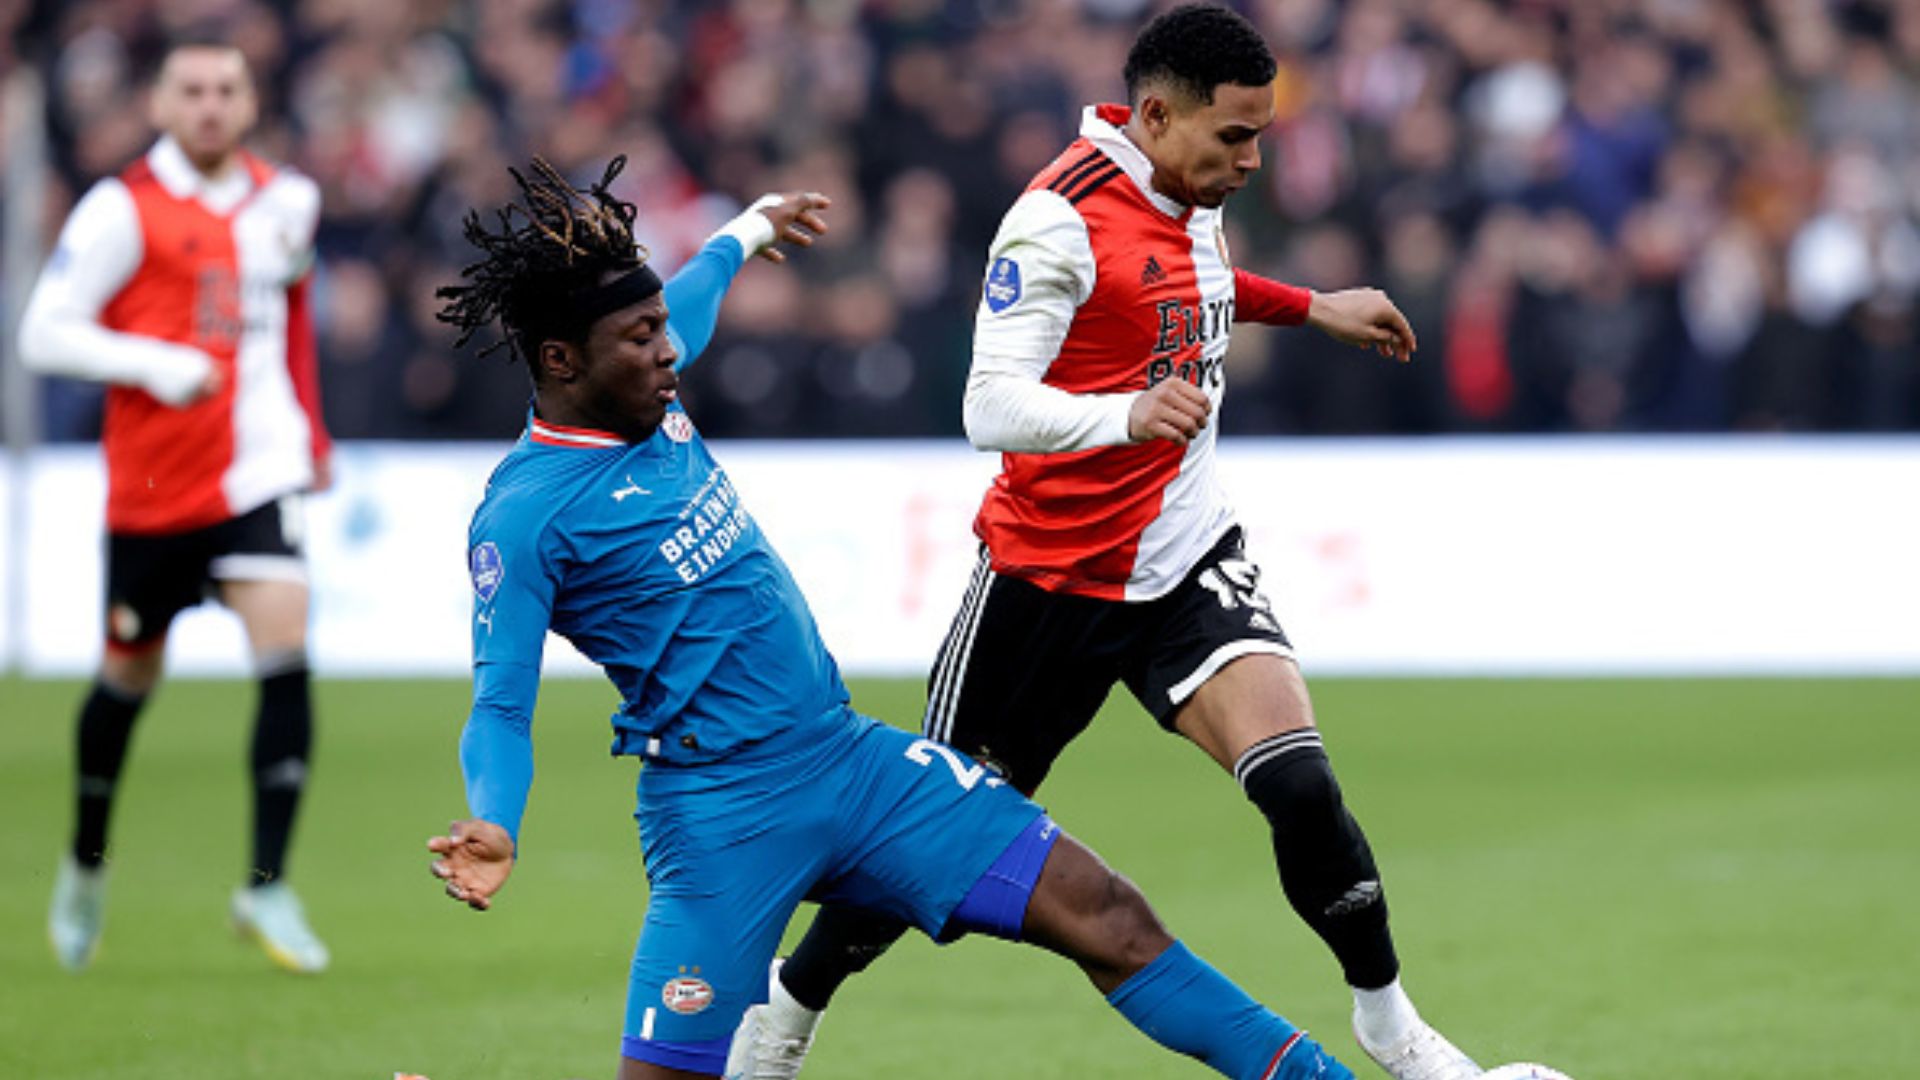 El defensor peruano tuvo una gran actuación en su regreso al once titular del Feyenoord.